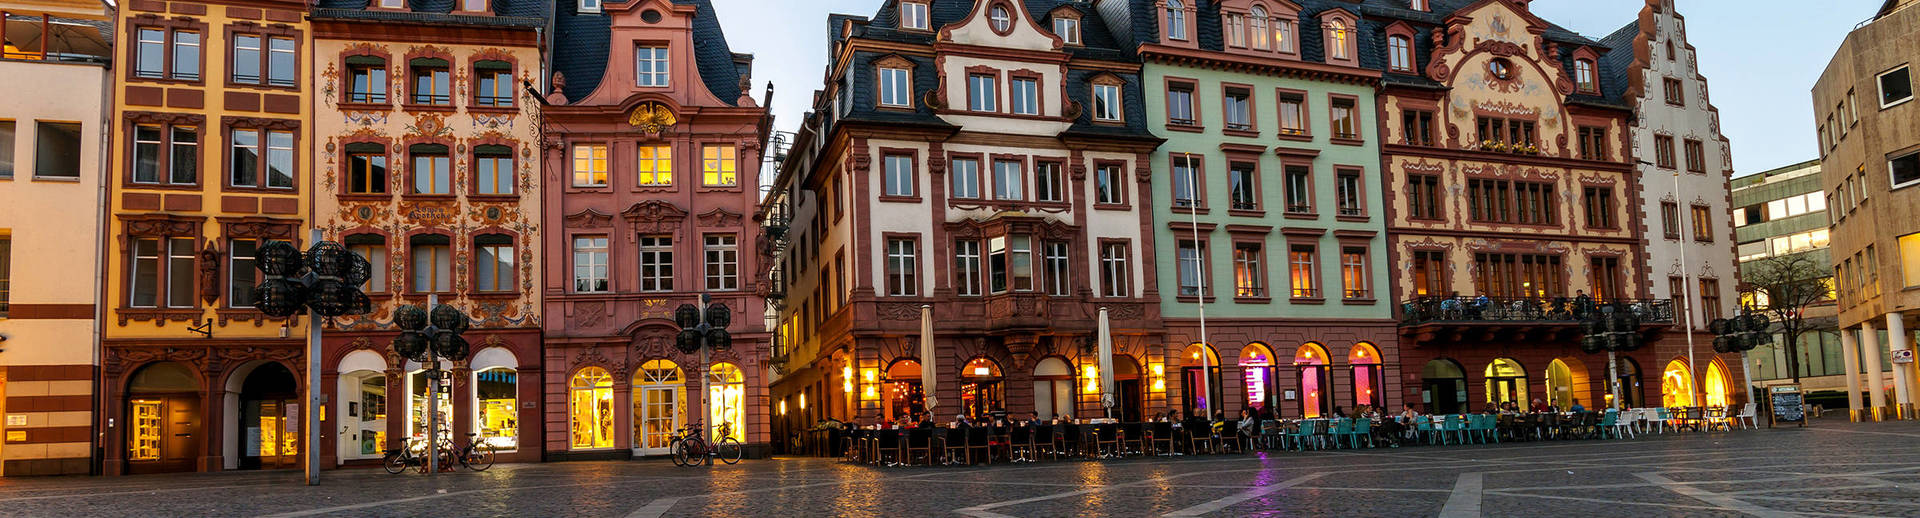 Dein Stellenangebot in Mainz bei H-Hotels.com